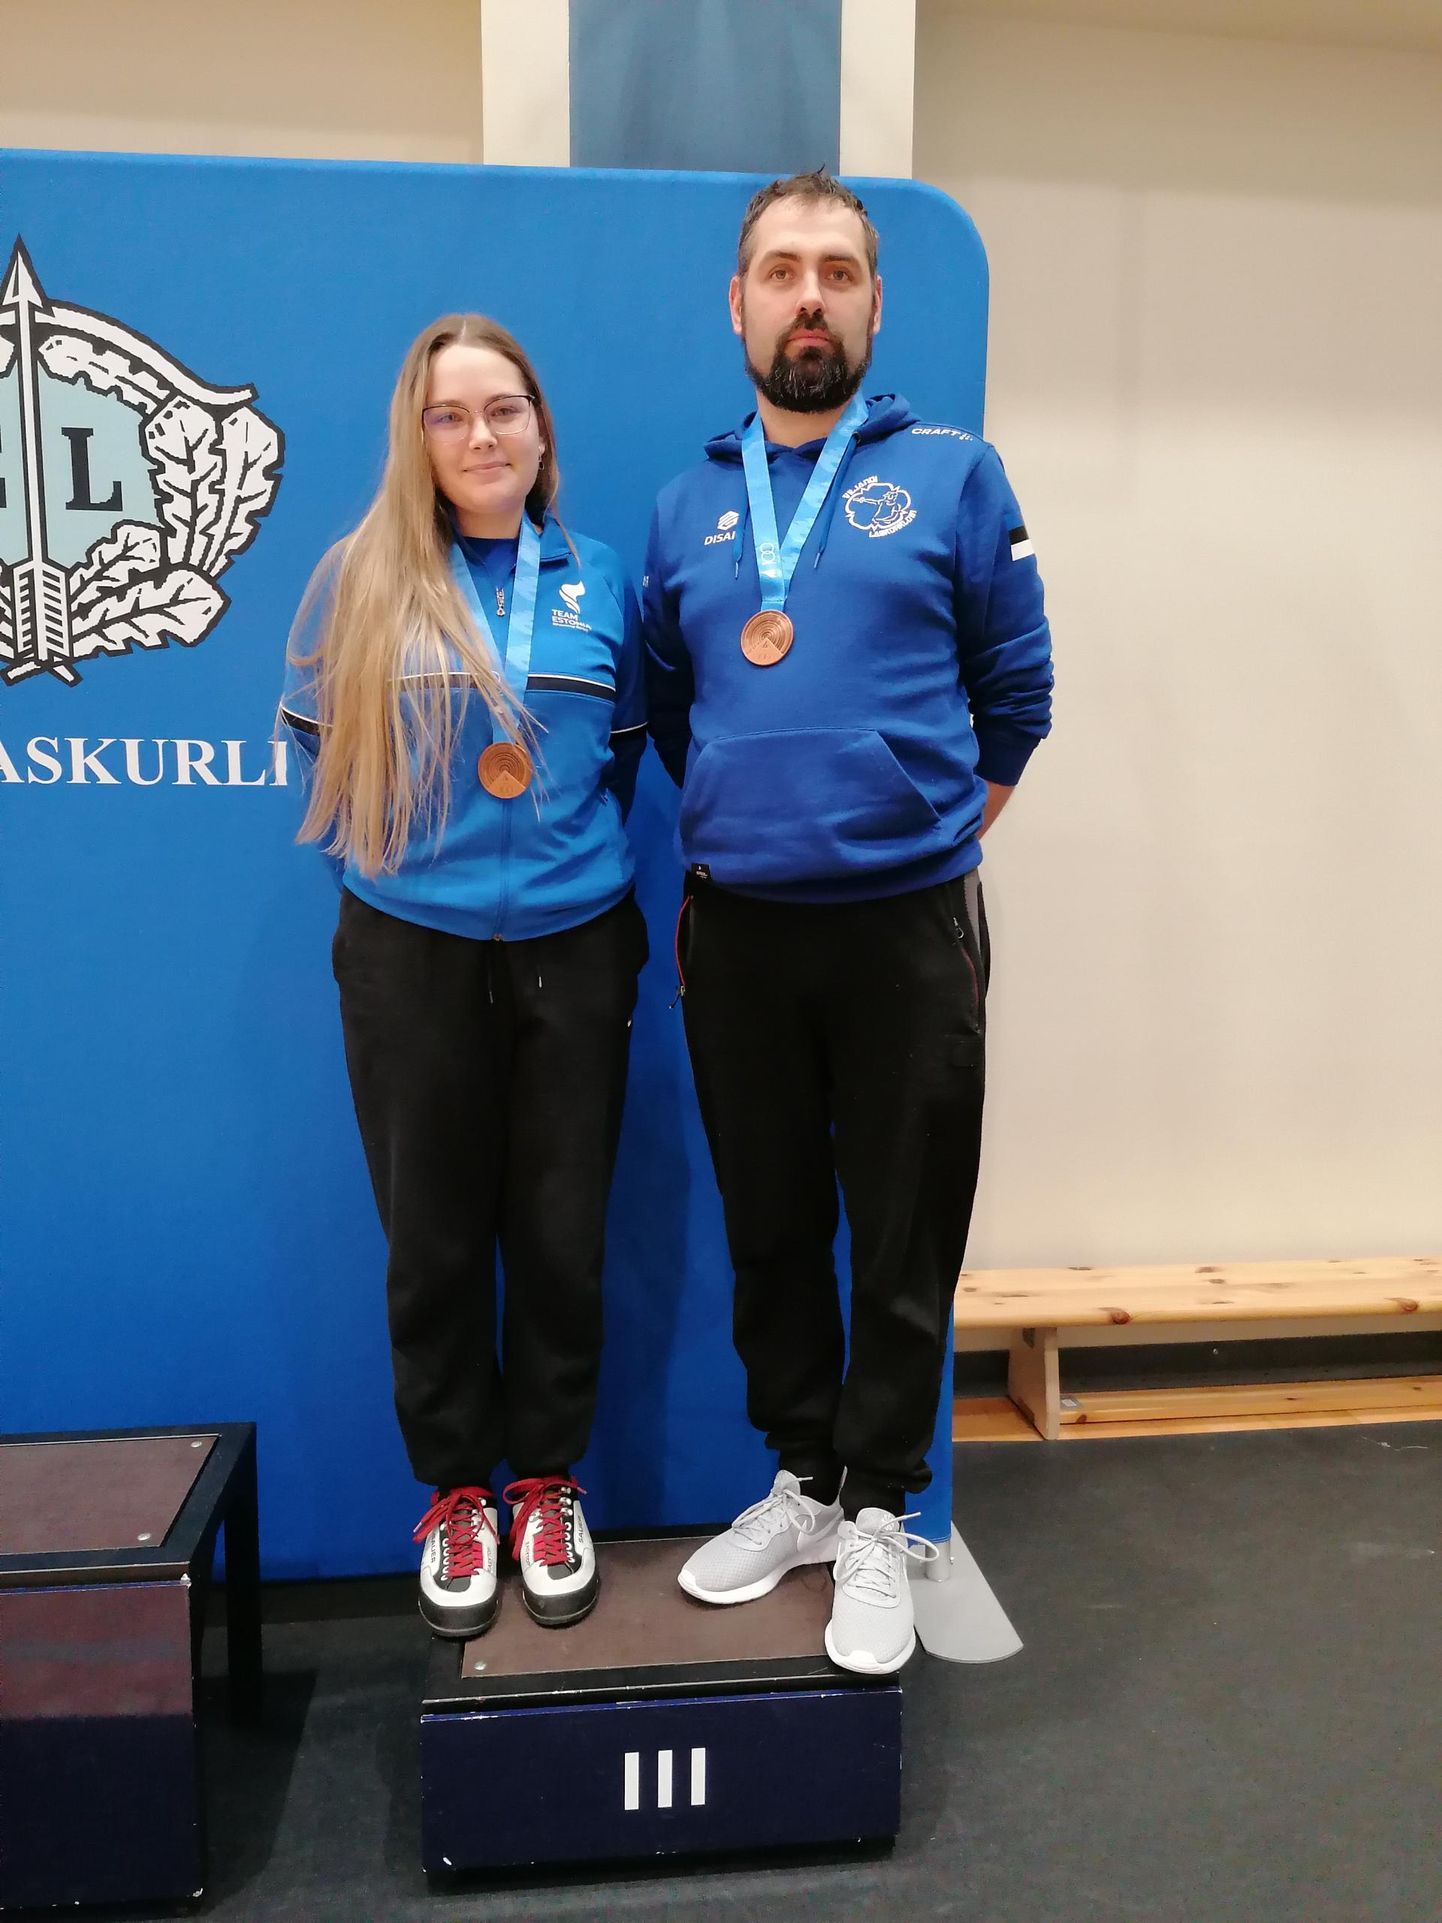 Viljandi segavõistkond, mille moodustasid Marja Kirss ja Silver Mäe, sai võistkondlikel Eesti meistrivõistlustel pronksmedali.